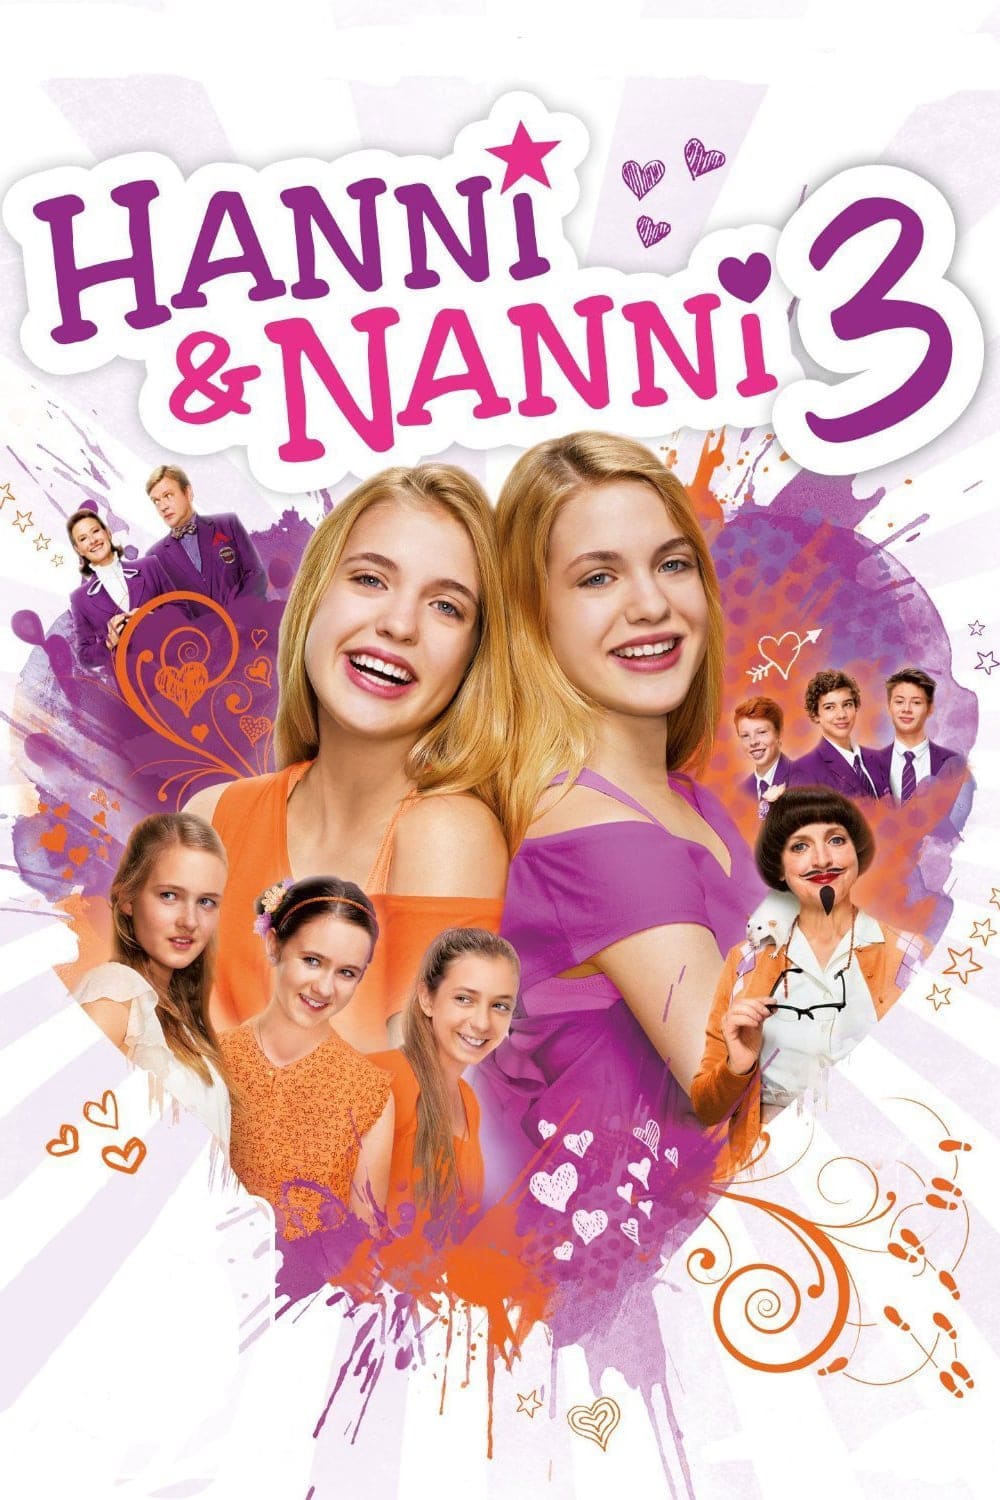 Plakat von "Hanni & Nanni 3"